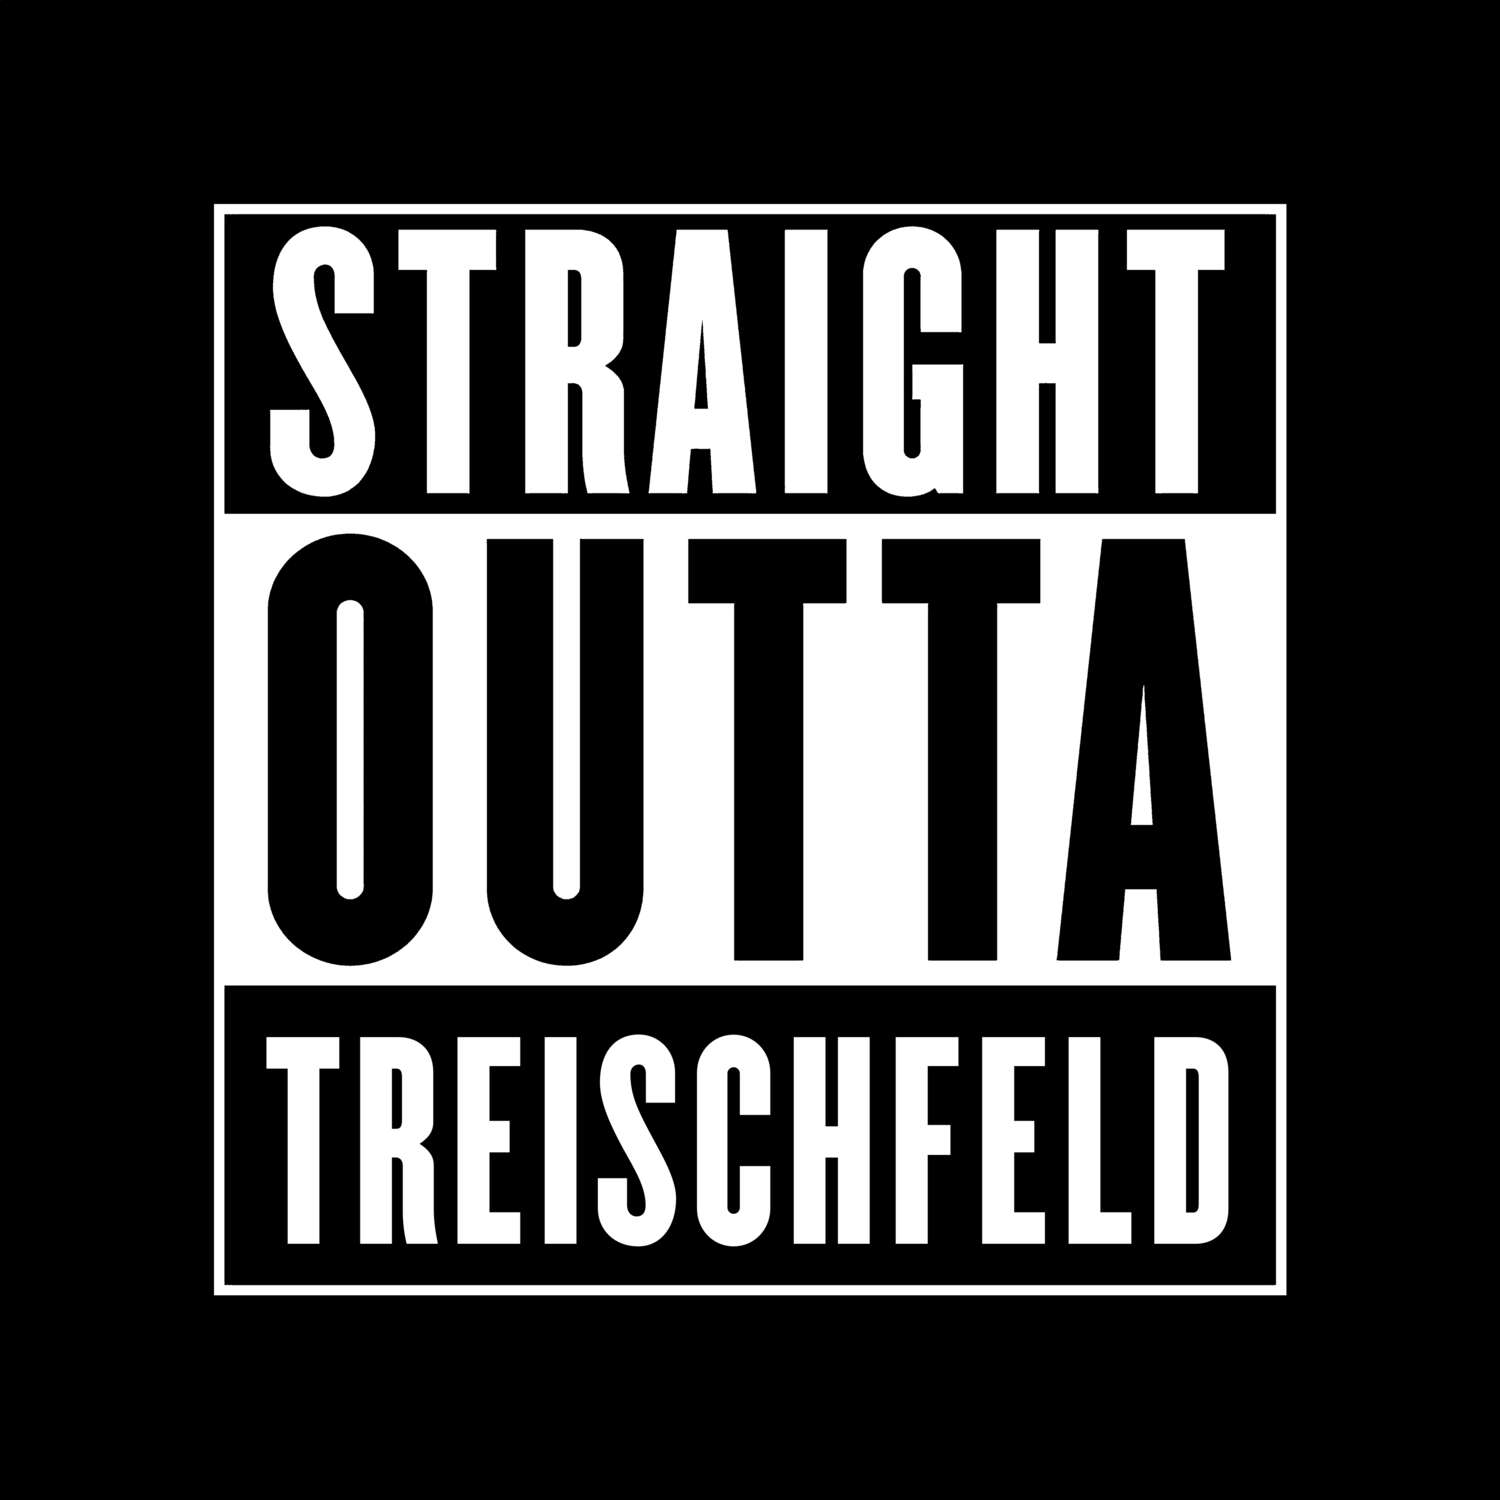 Treischfeld T-Shirt »Straight Outta«